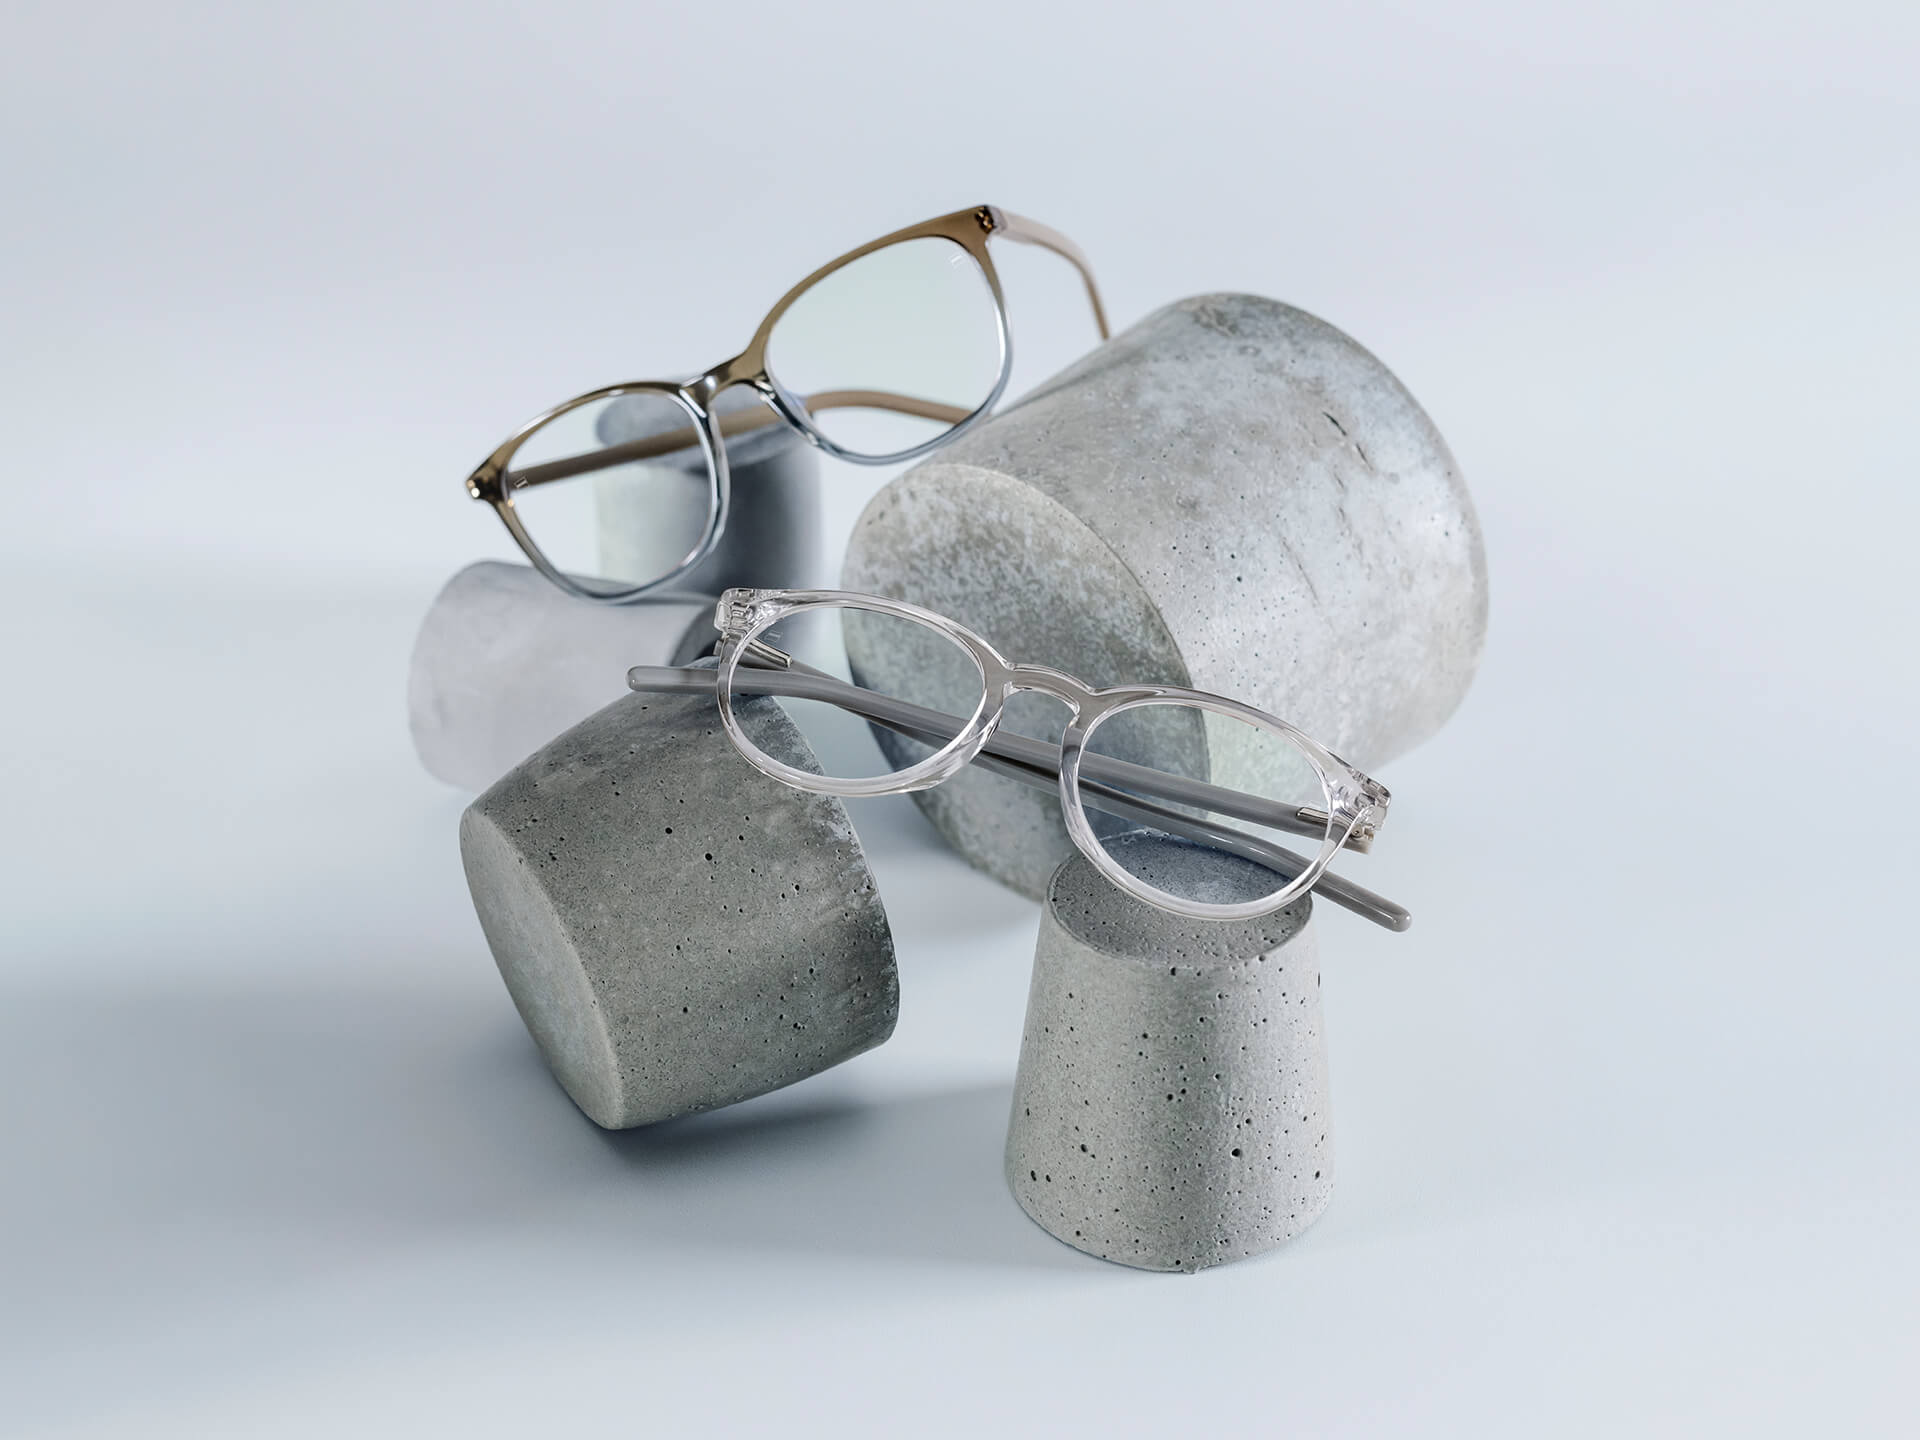 Bril met ZEISS brillenglazen die voorzien zijn van DuraVision® Chrome coatings worden op stenen sokkels van verschillende grootte geplaatst.